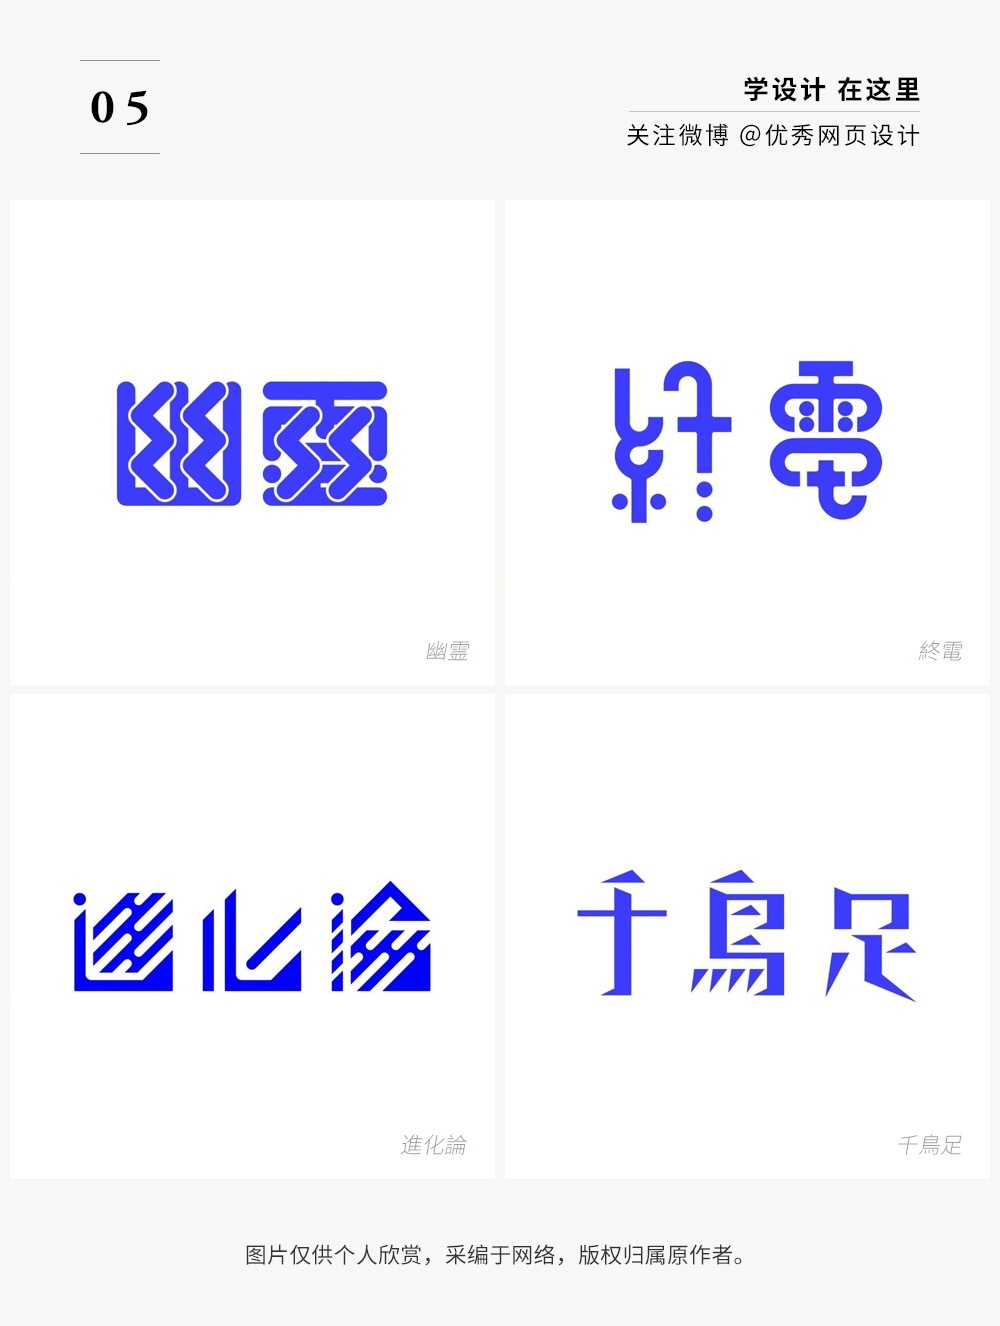 72幅日本设计师的字体打卡作品